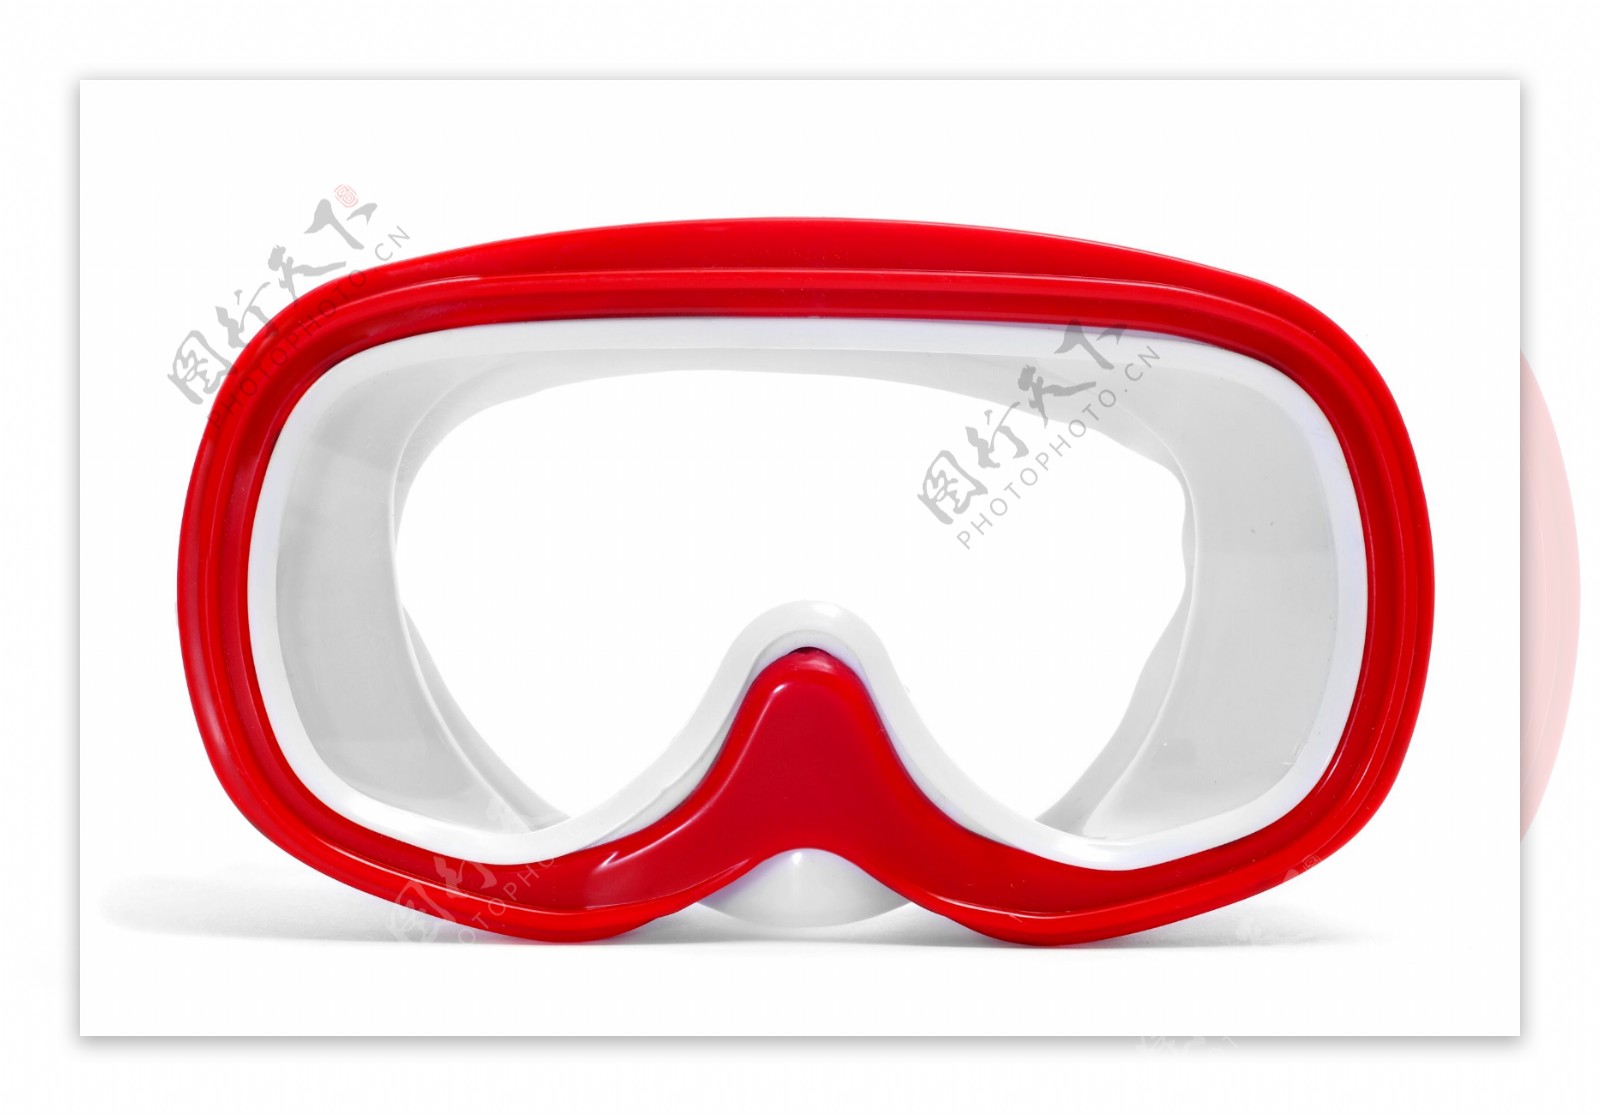 红色潜水眼镜